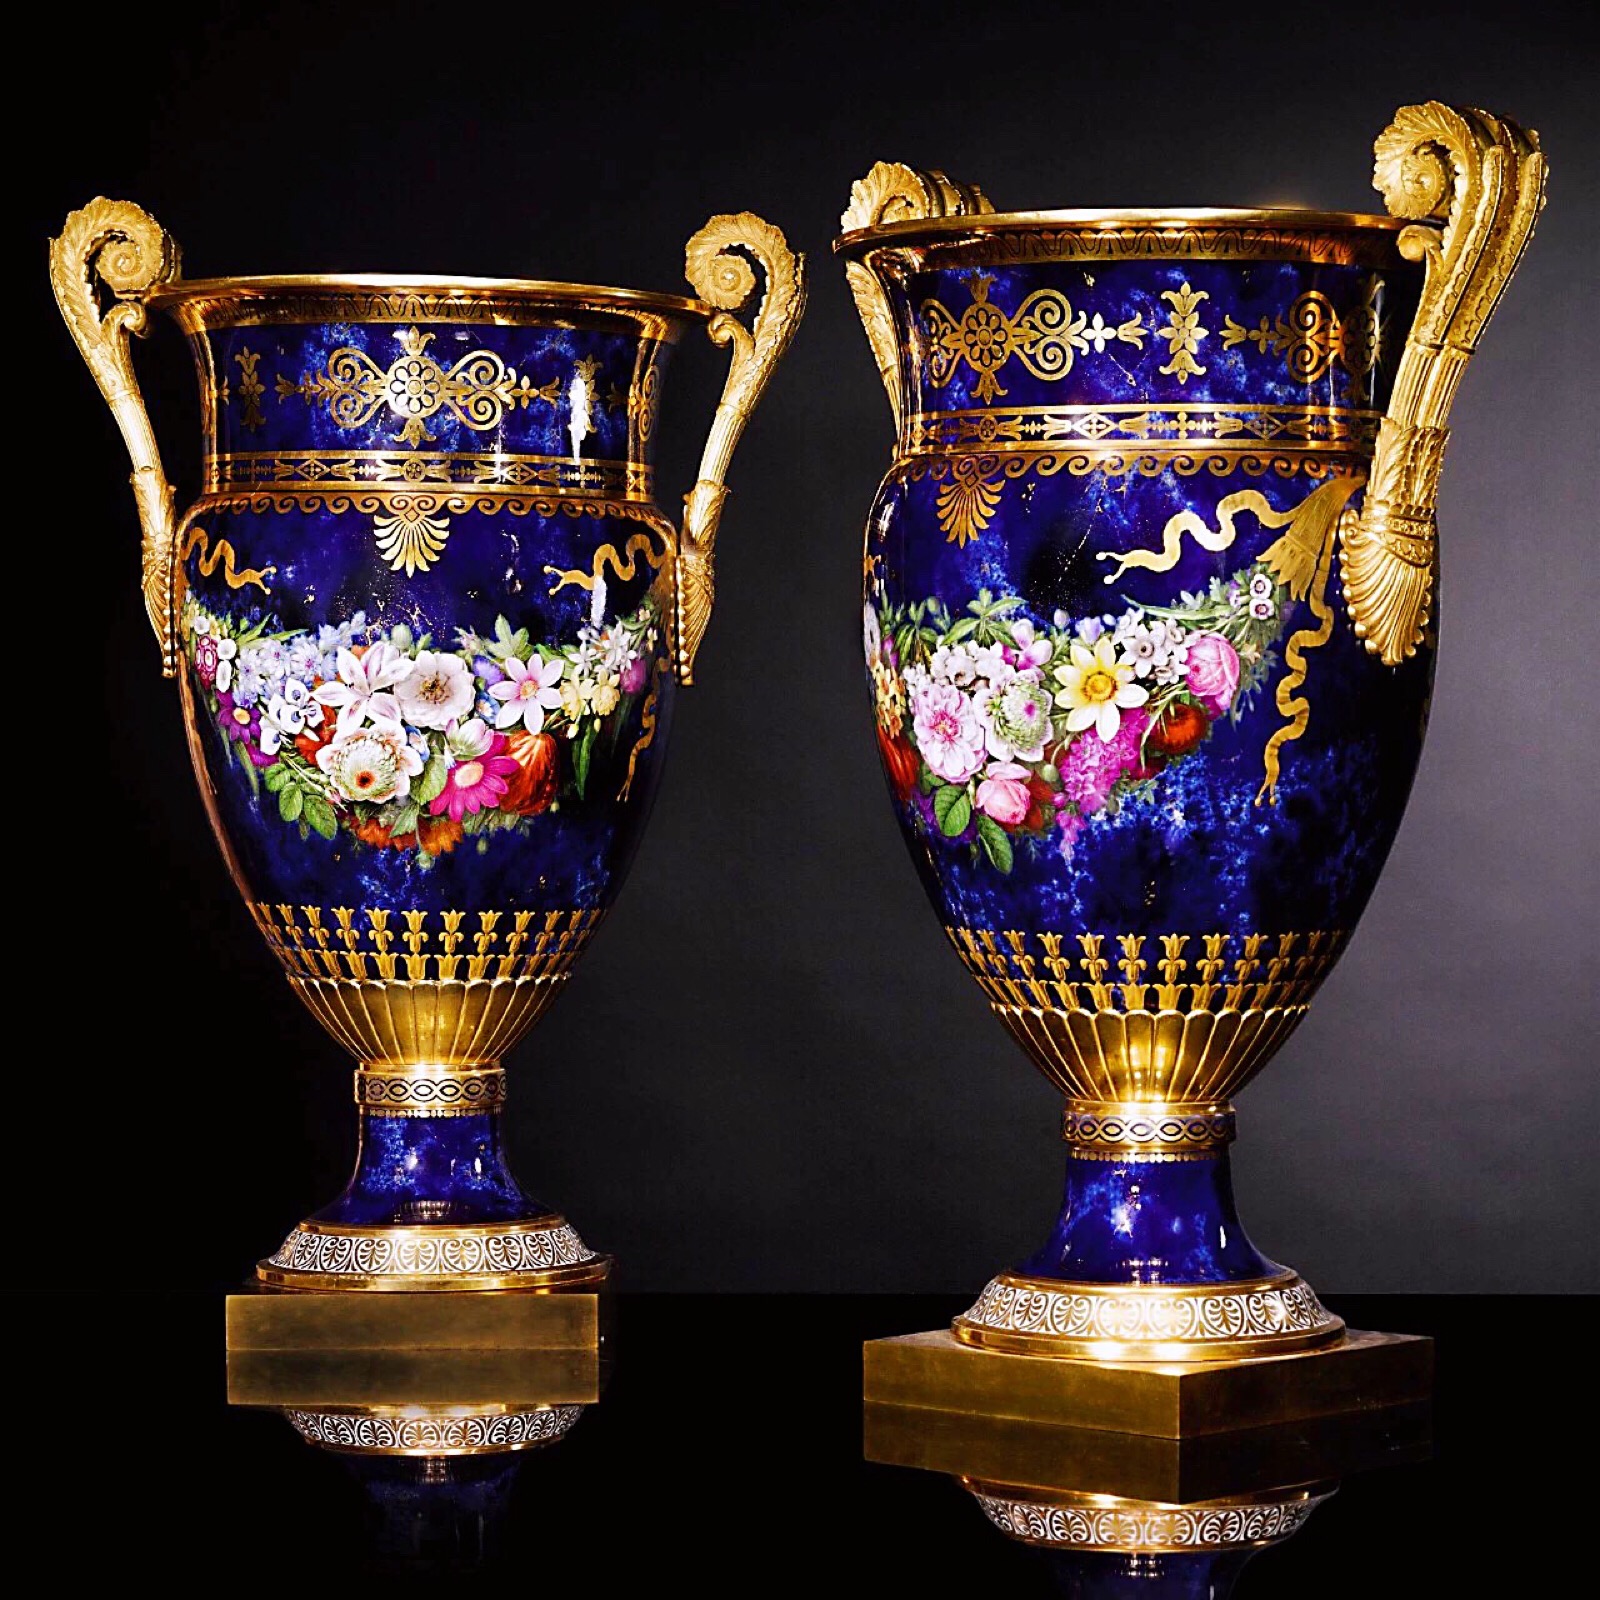 塞弗尔青金石蓝瓷釉鎏金花瓶一对 1816 堆糖 美图壁纸兴趣社区